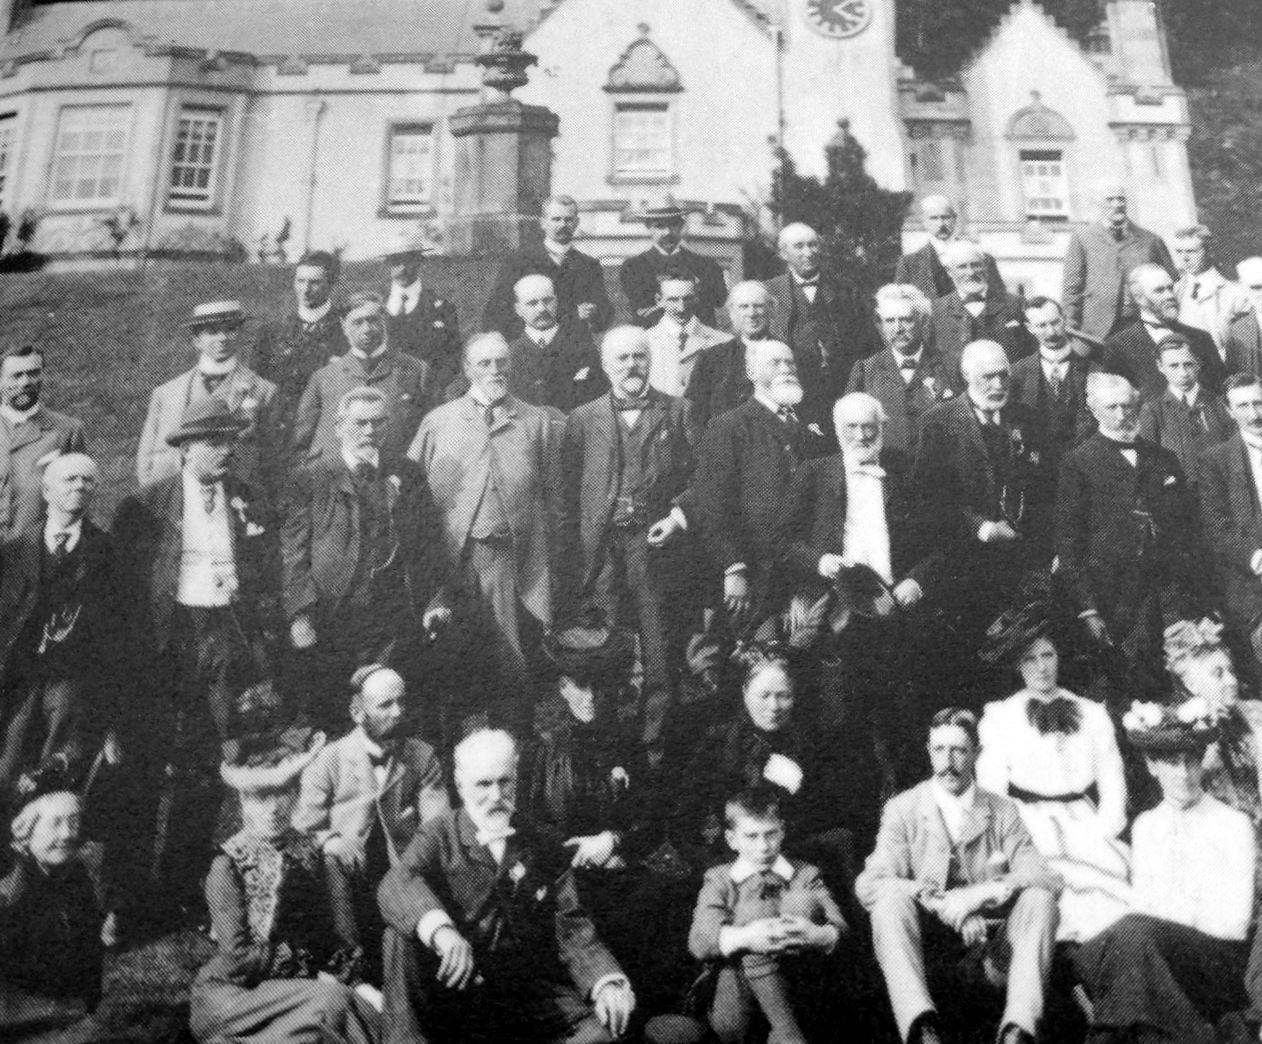 Tour Scotland Photographs: Old Photograph Philiphaugh House Scotland1262 x 1044